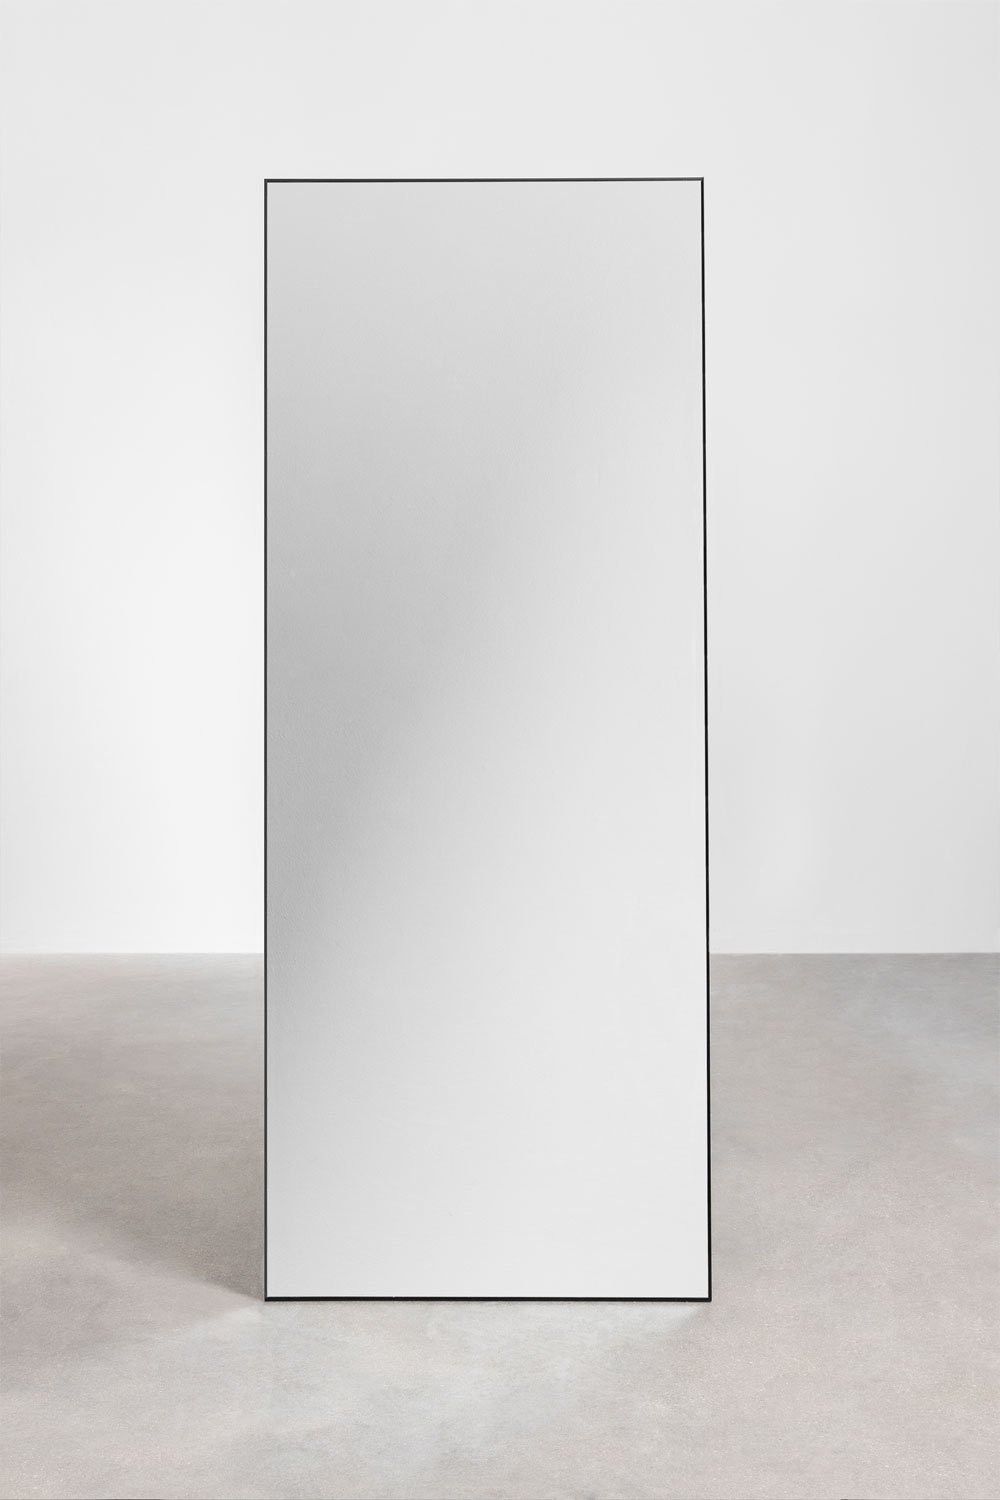 Miroir sur pied en aluminium (80x200 cm) Zastron, image de la galerie 2